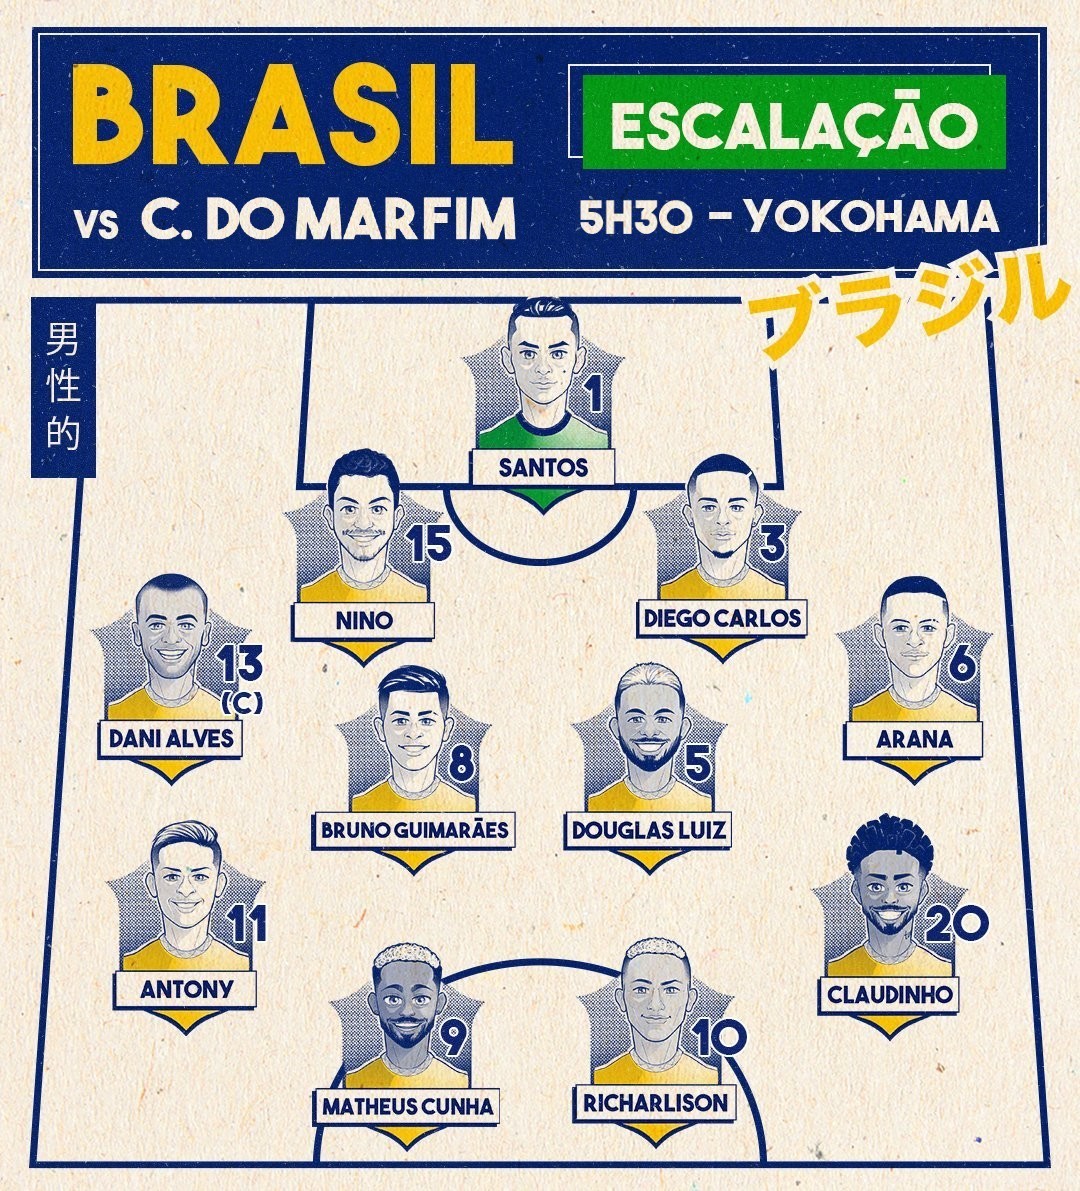 Jogo do Brasil começa agora; confira escalação e veja onde, jogo agora 